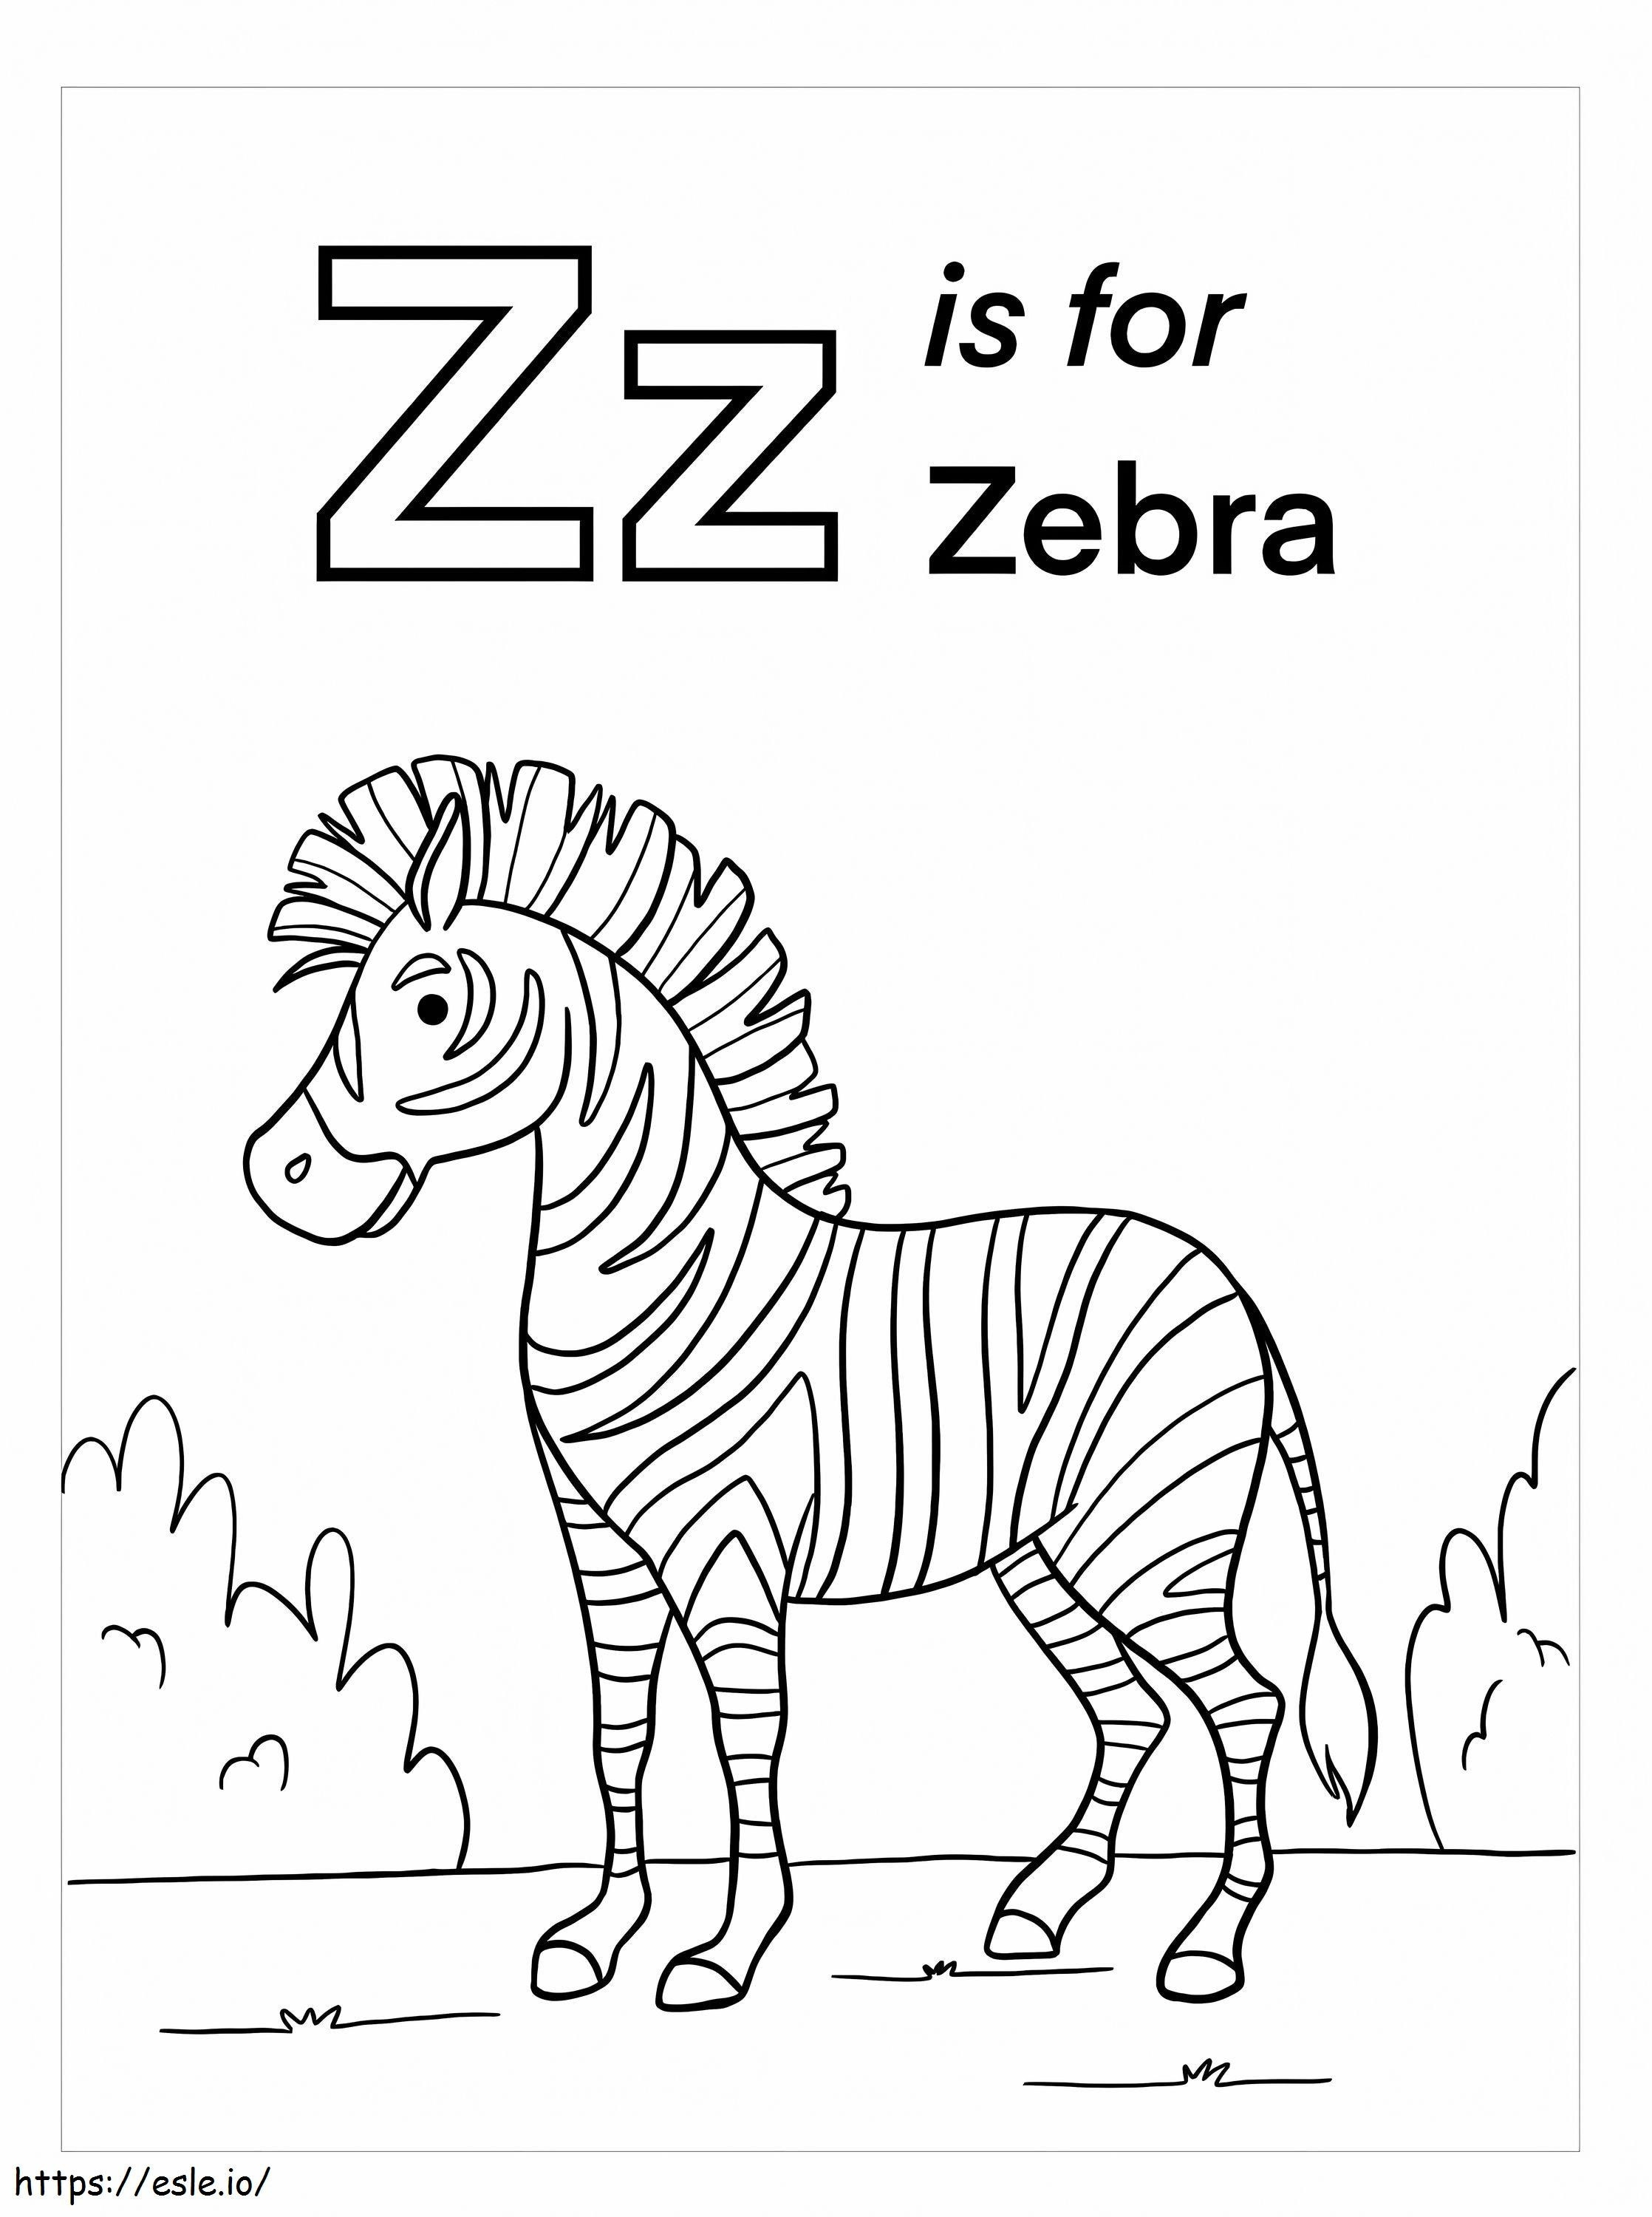 Z sta per Zebra da colorare